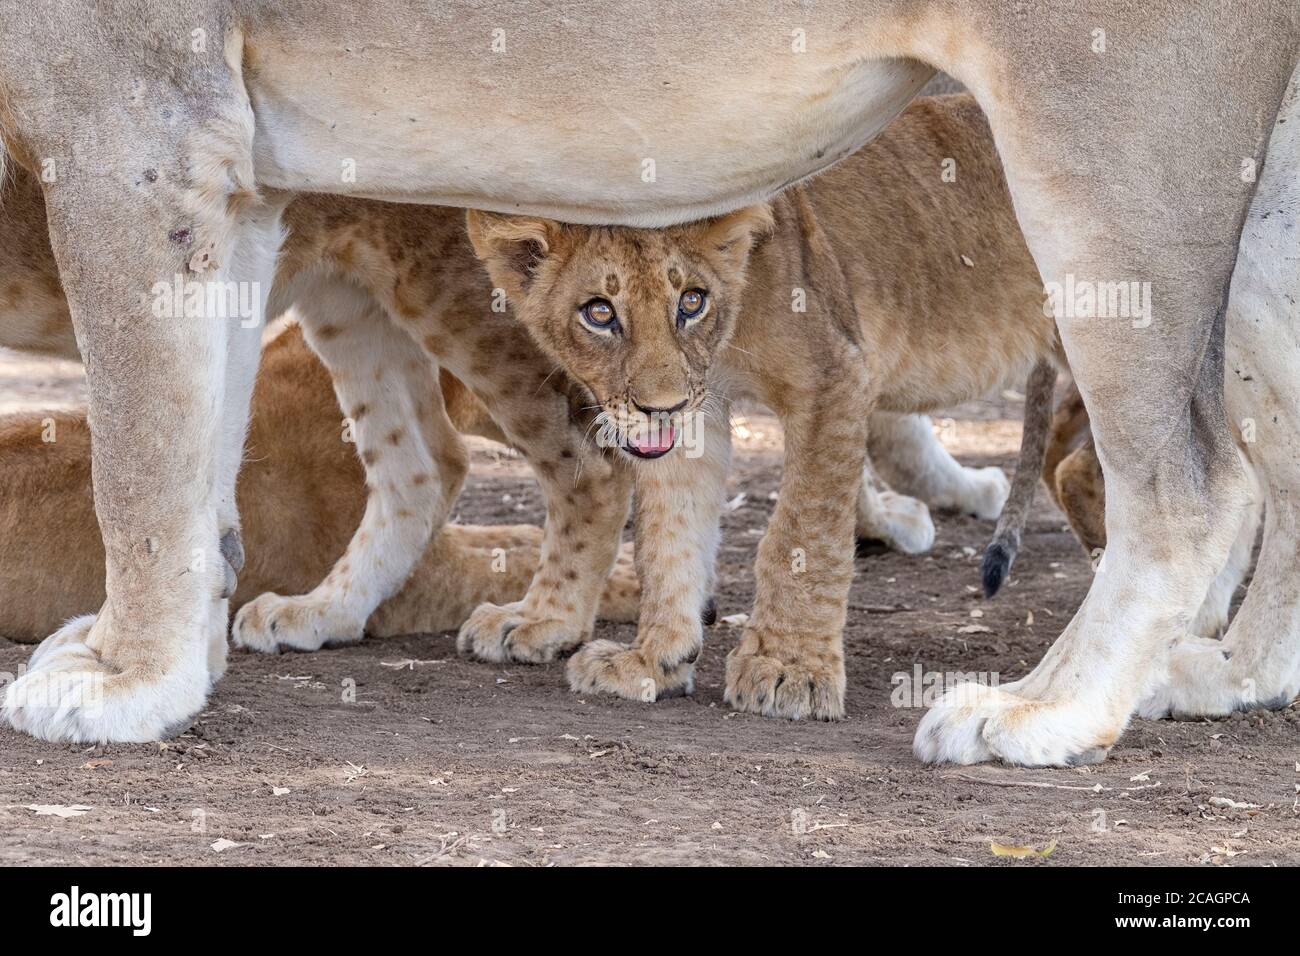 Löwenjunge, Panthera leo, Augen, Gesicht Nahaufnahme steht unter seinem Mutterbauch. South Luangwa National Park, Sambia, Afrika Stockfoto